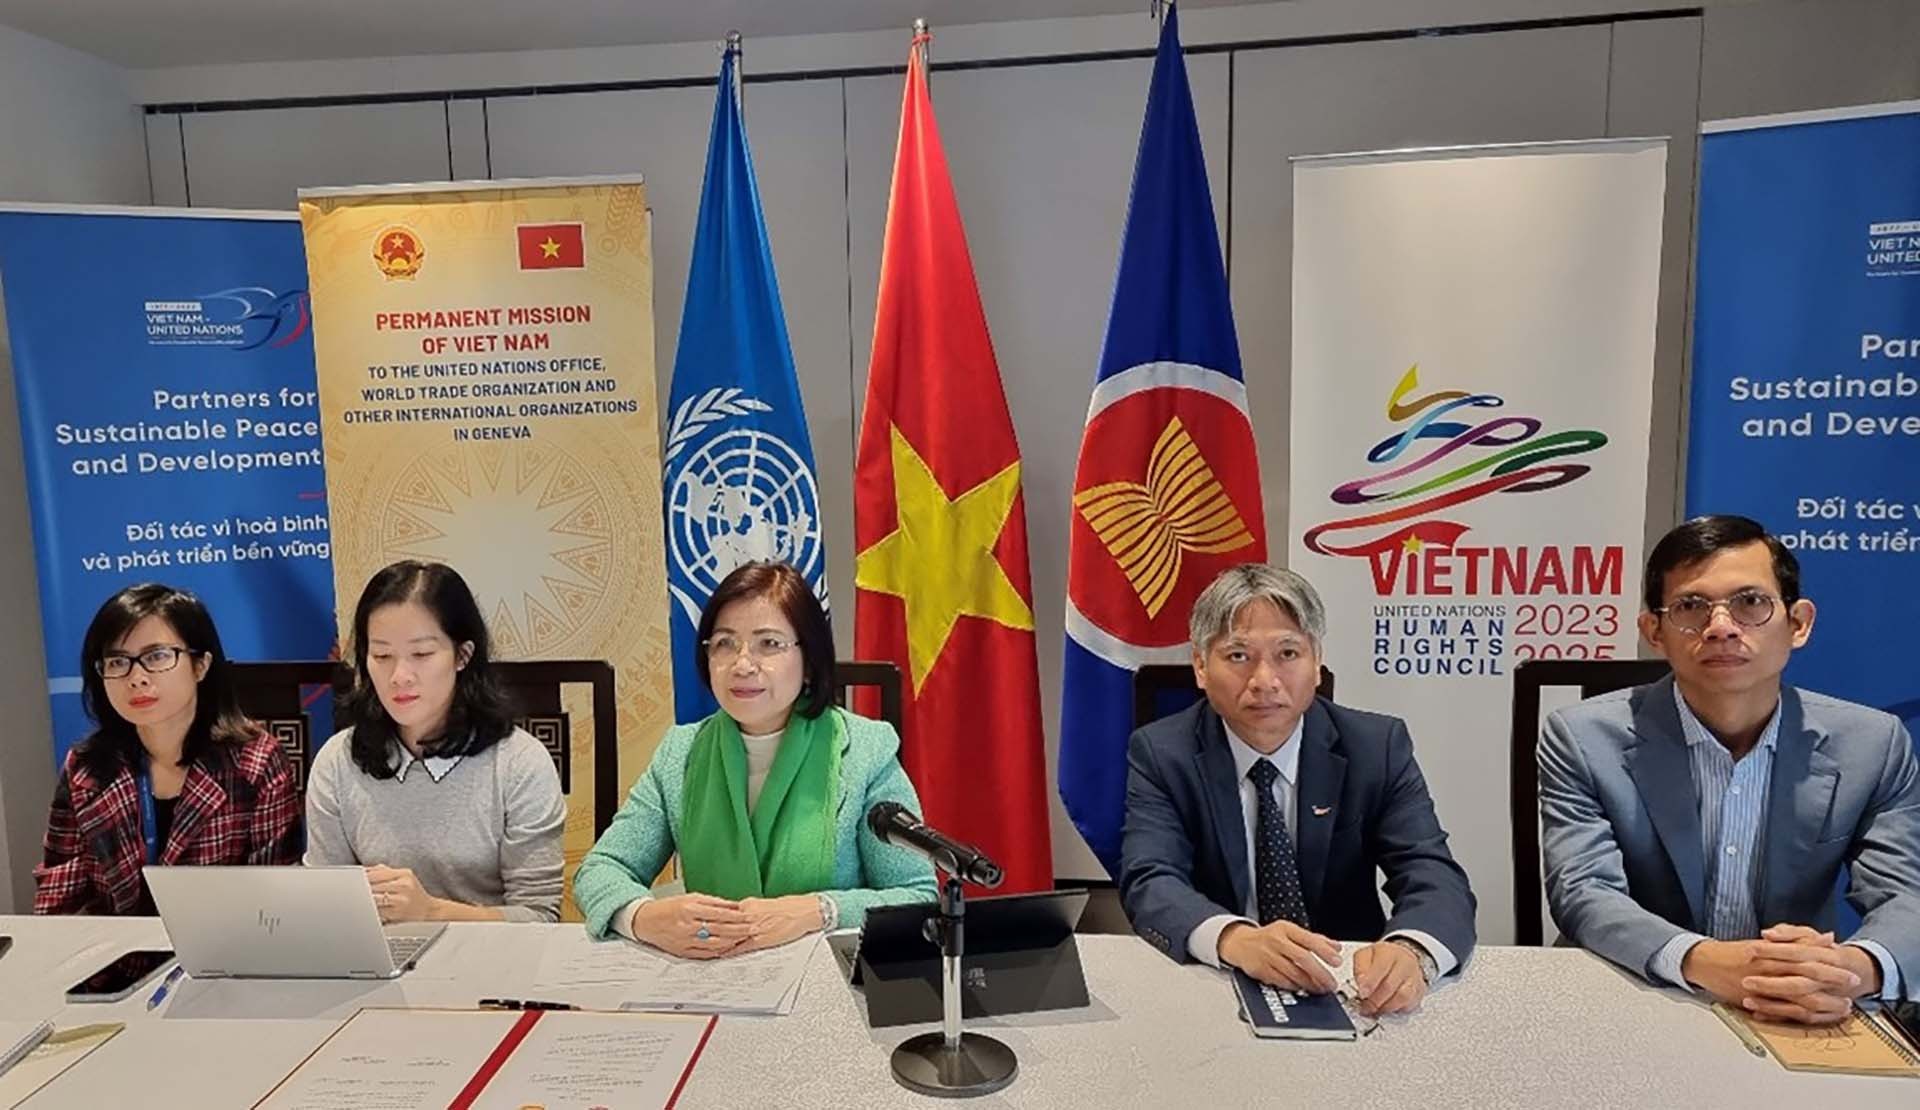 Đại sứ TS. Lê Thị Tuyết Mai và đại diện cán bộ Phái đoàn Việt Nam tại Geneva tham dự lễ ký Bản ghi nhớ giữa Phái đoàn và Đại học Ngoại thương (FTU) và Hội thảo quốc tế trực tuyến, Geneva, ngày 4/11. (Nguồn: Phái đoàn Việt Nam tại Geneva)